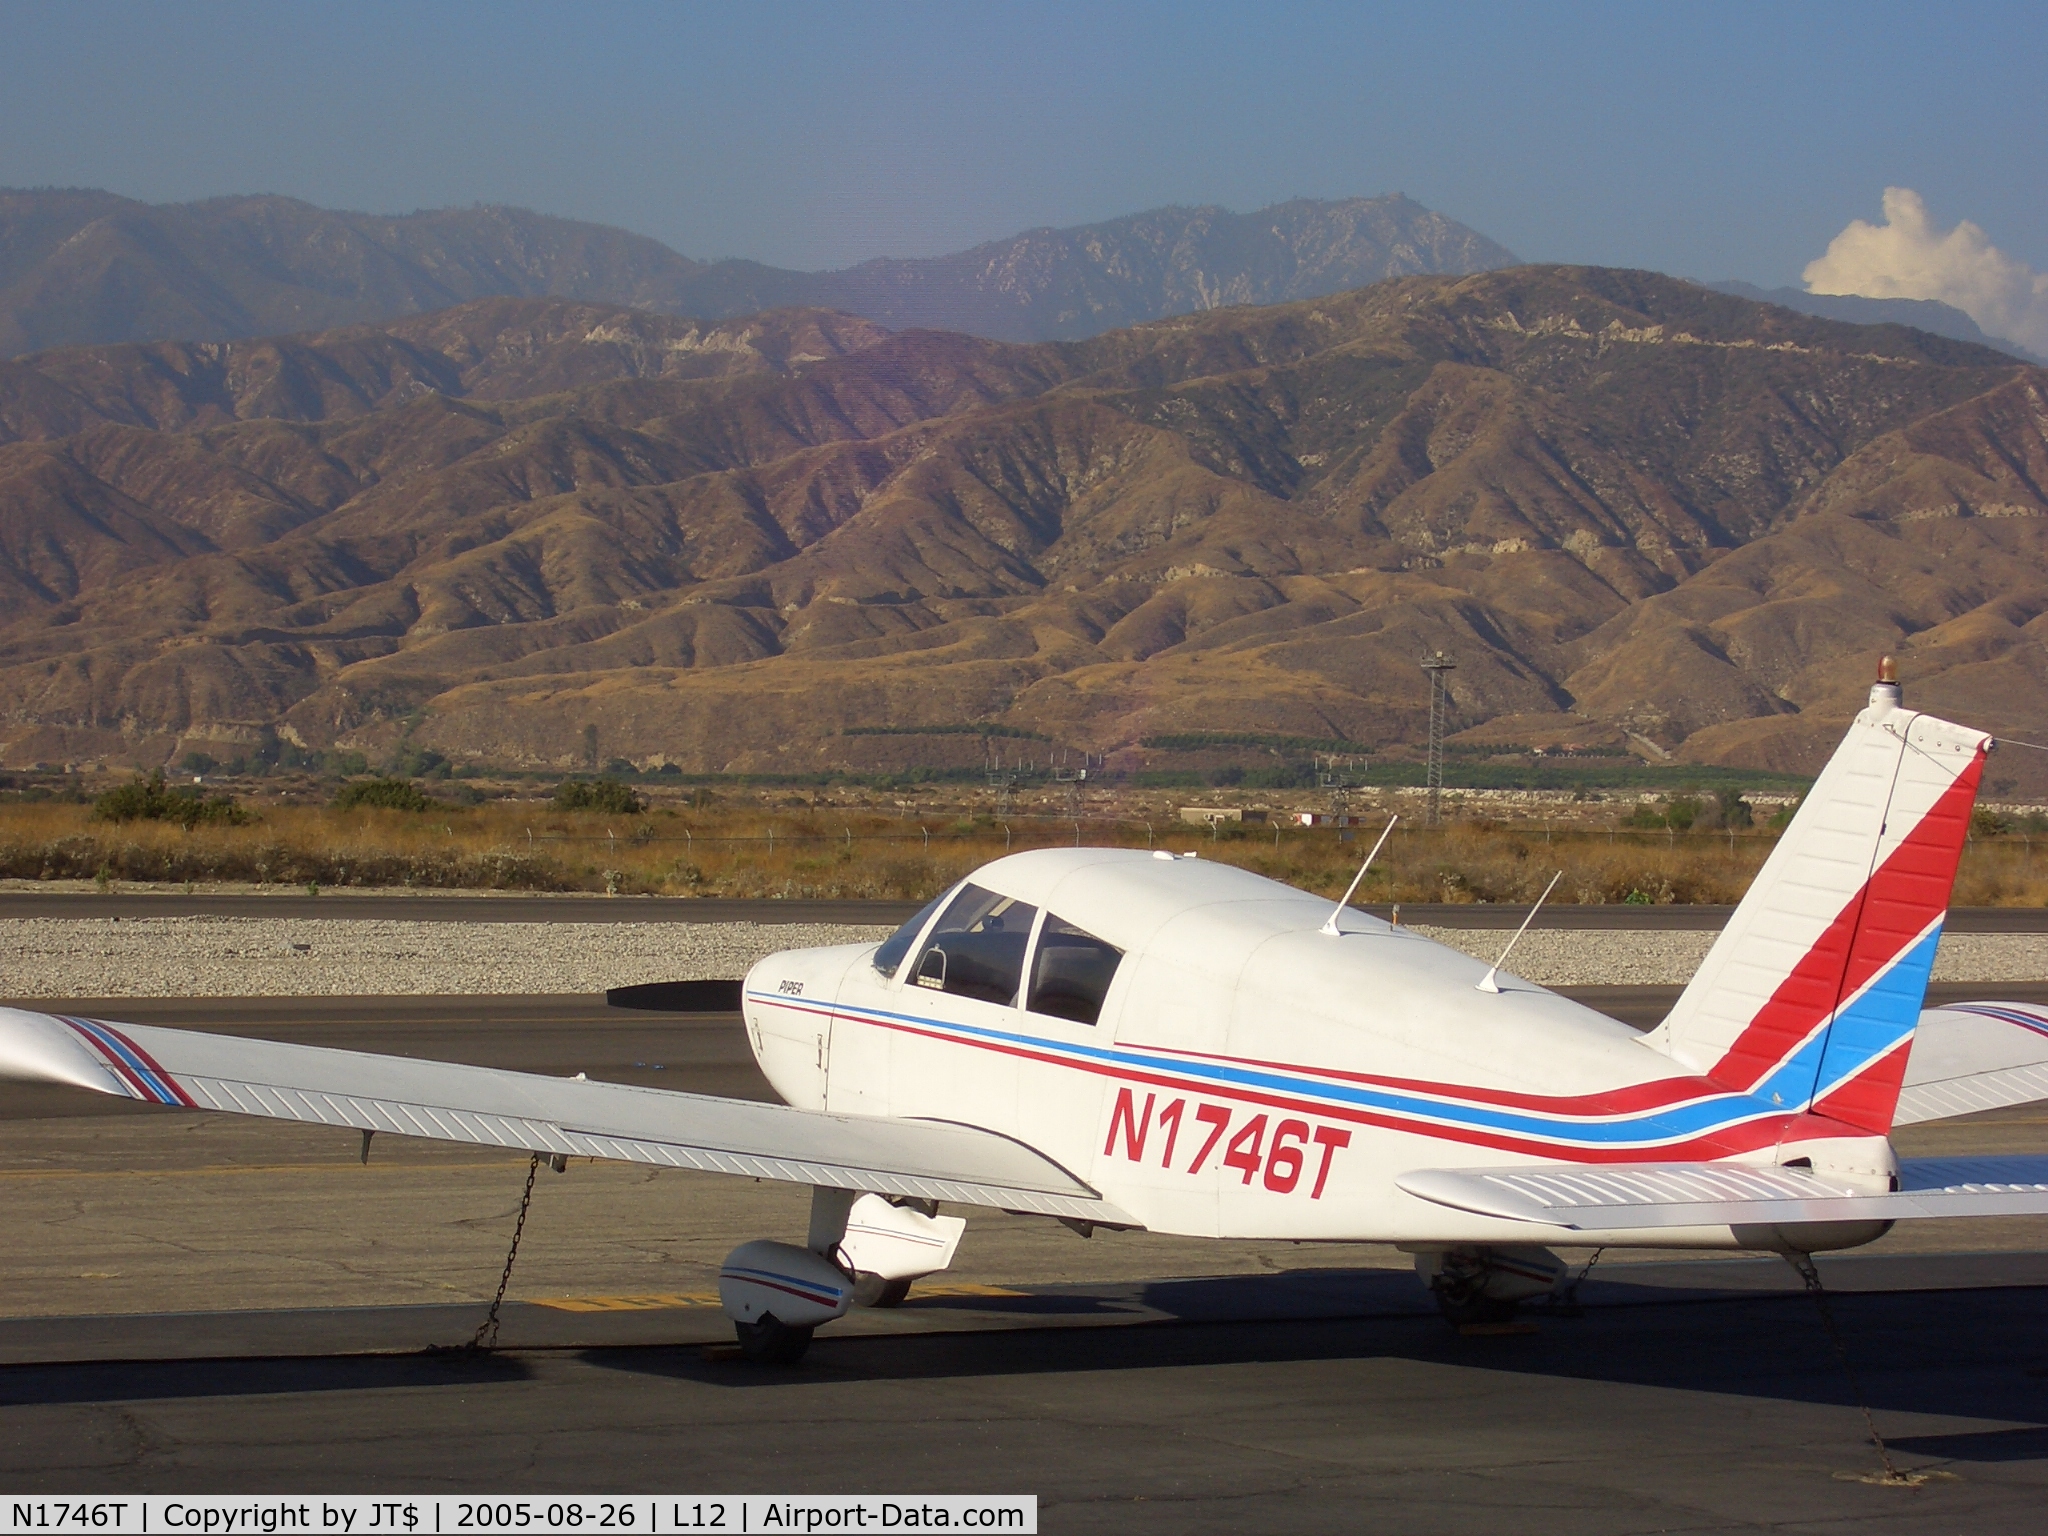 N1746T, 1970 Piper PA-28-140 Cherokee C/N 28-7125064, 46T in Redlands, CA